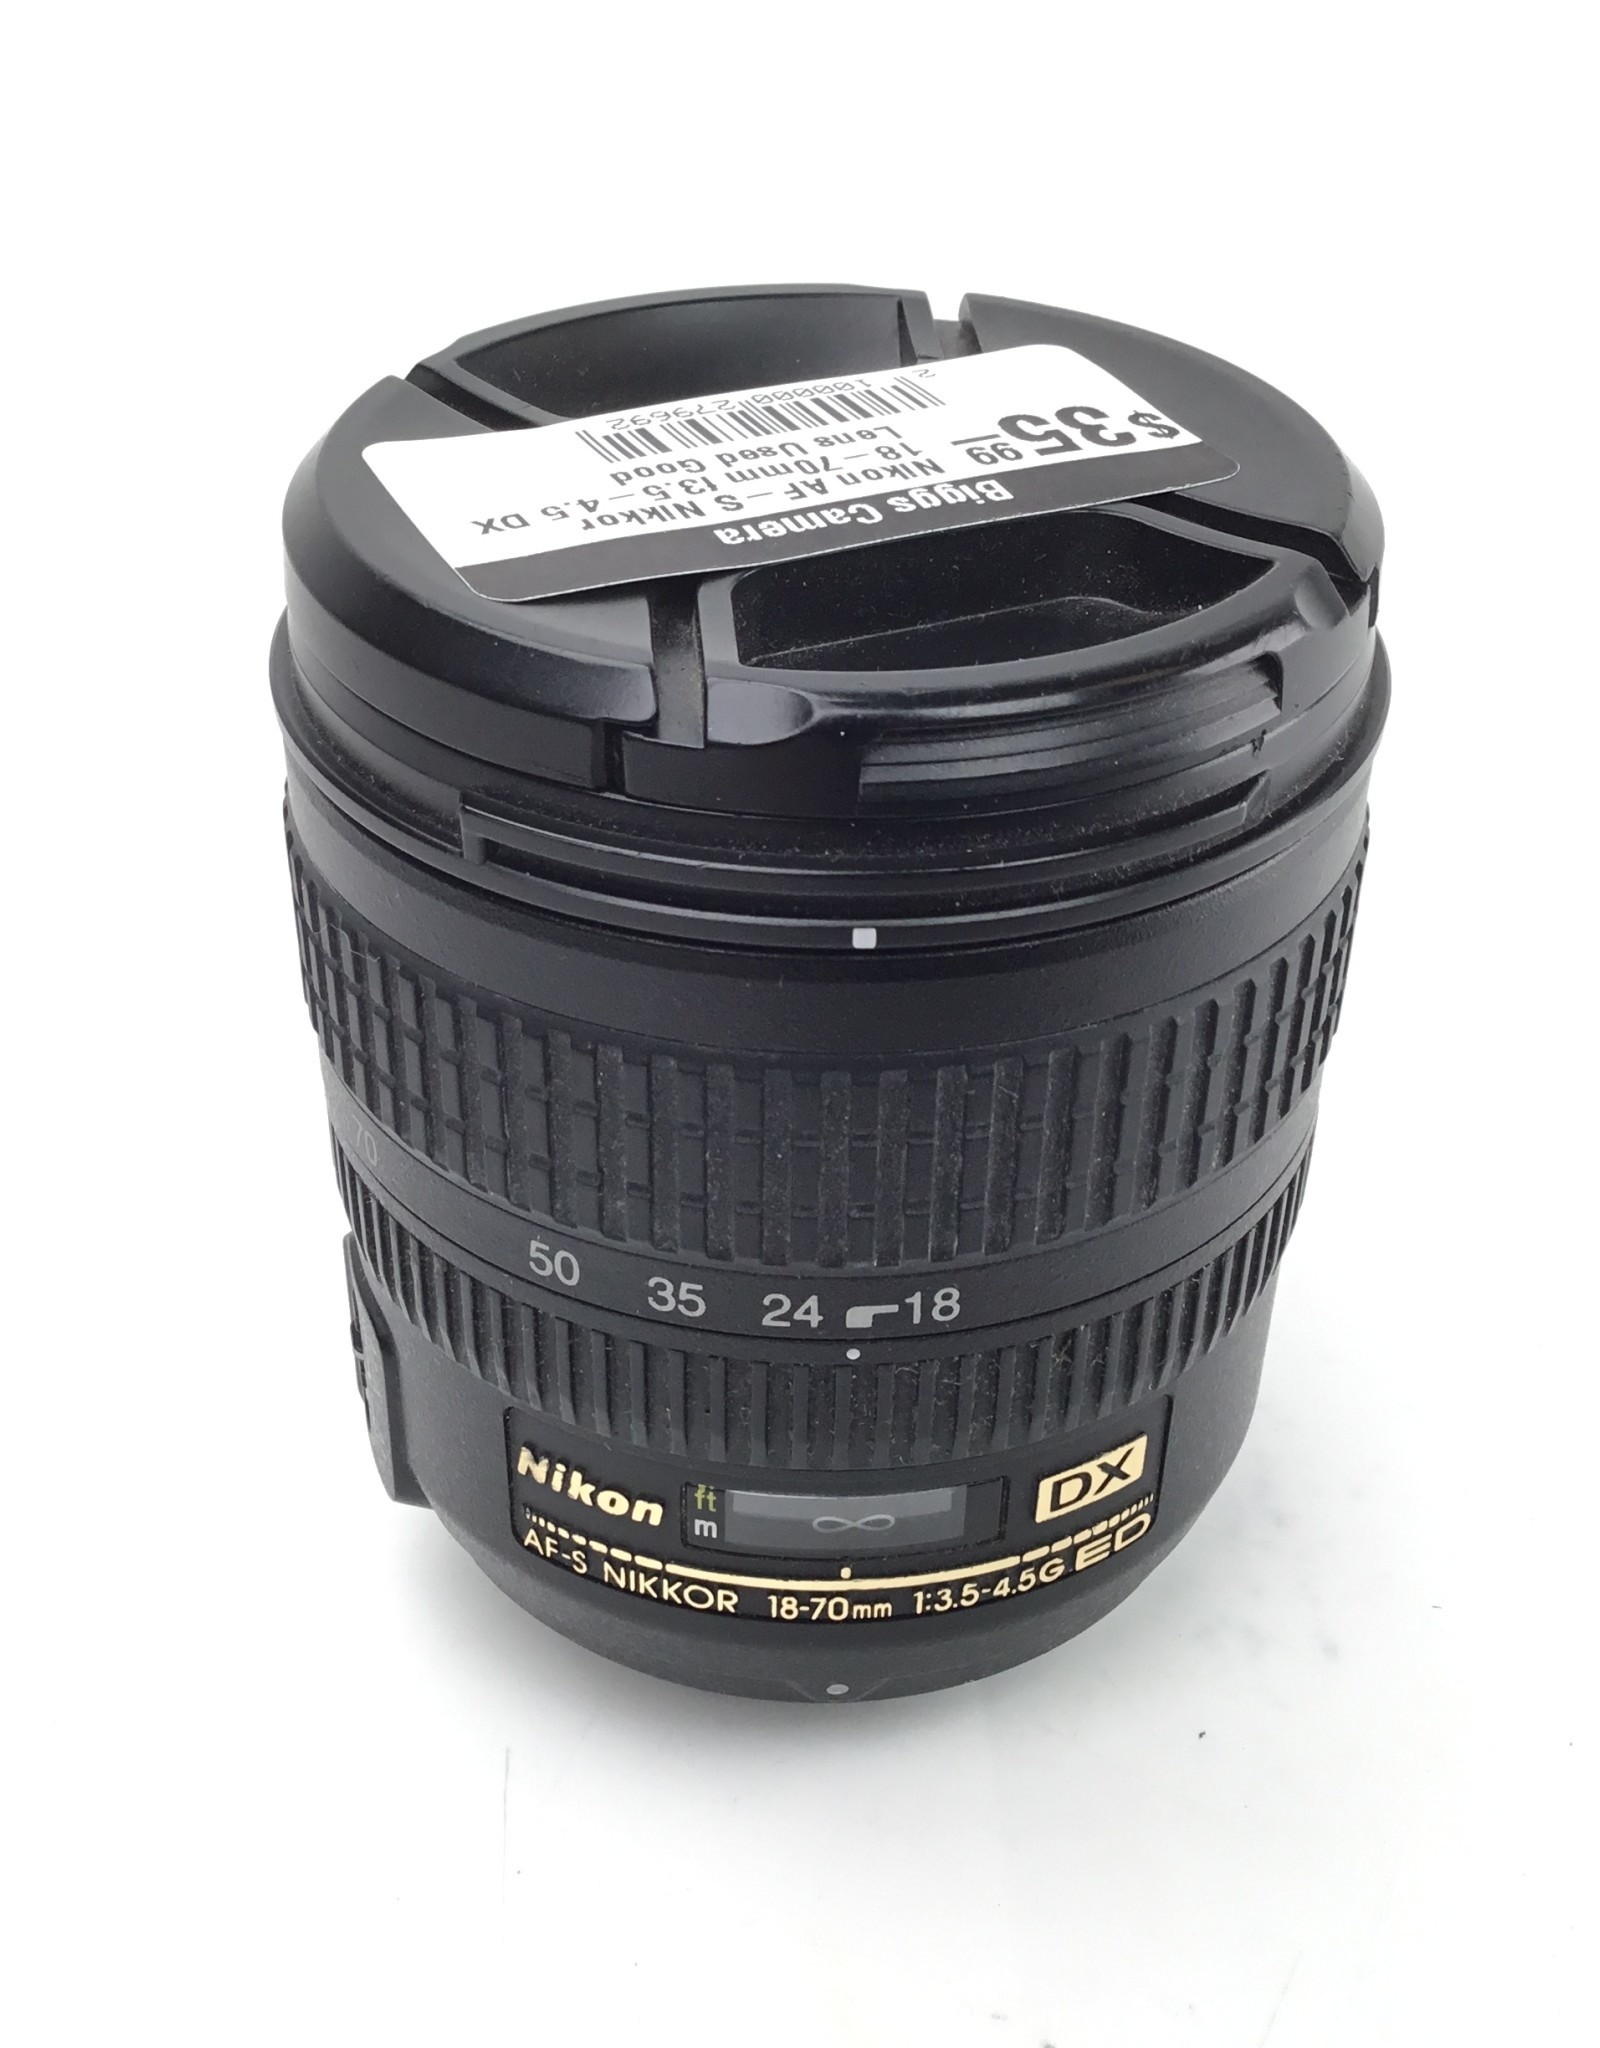 NIKON Nikon AF-S Nikkor 18-70mm f3.5-4.5 DX Lens Used Good